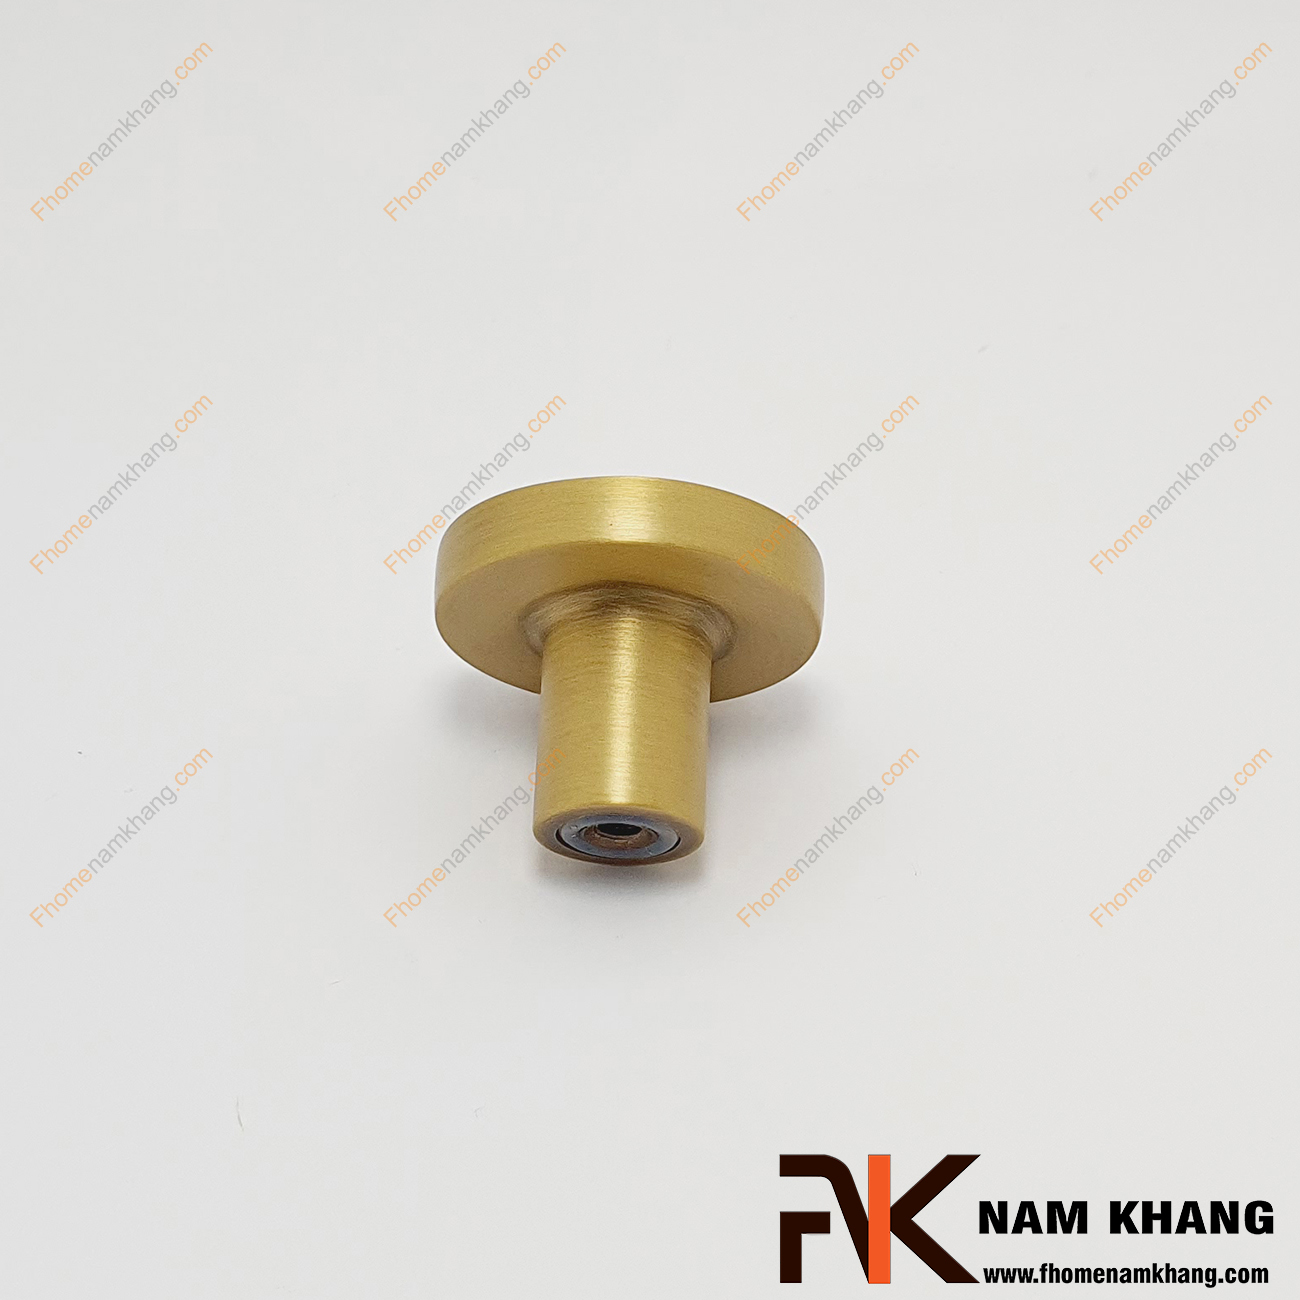 Núm cửa tủ cao cấp bằng đồng NK455A-R, dáng núm tròn trơn màu đồng vàng xước ấn tượng, lắp đặt bằng vít khoan âm cực kỳ an toàn khi sử dụng.